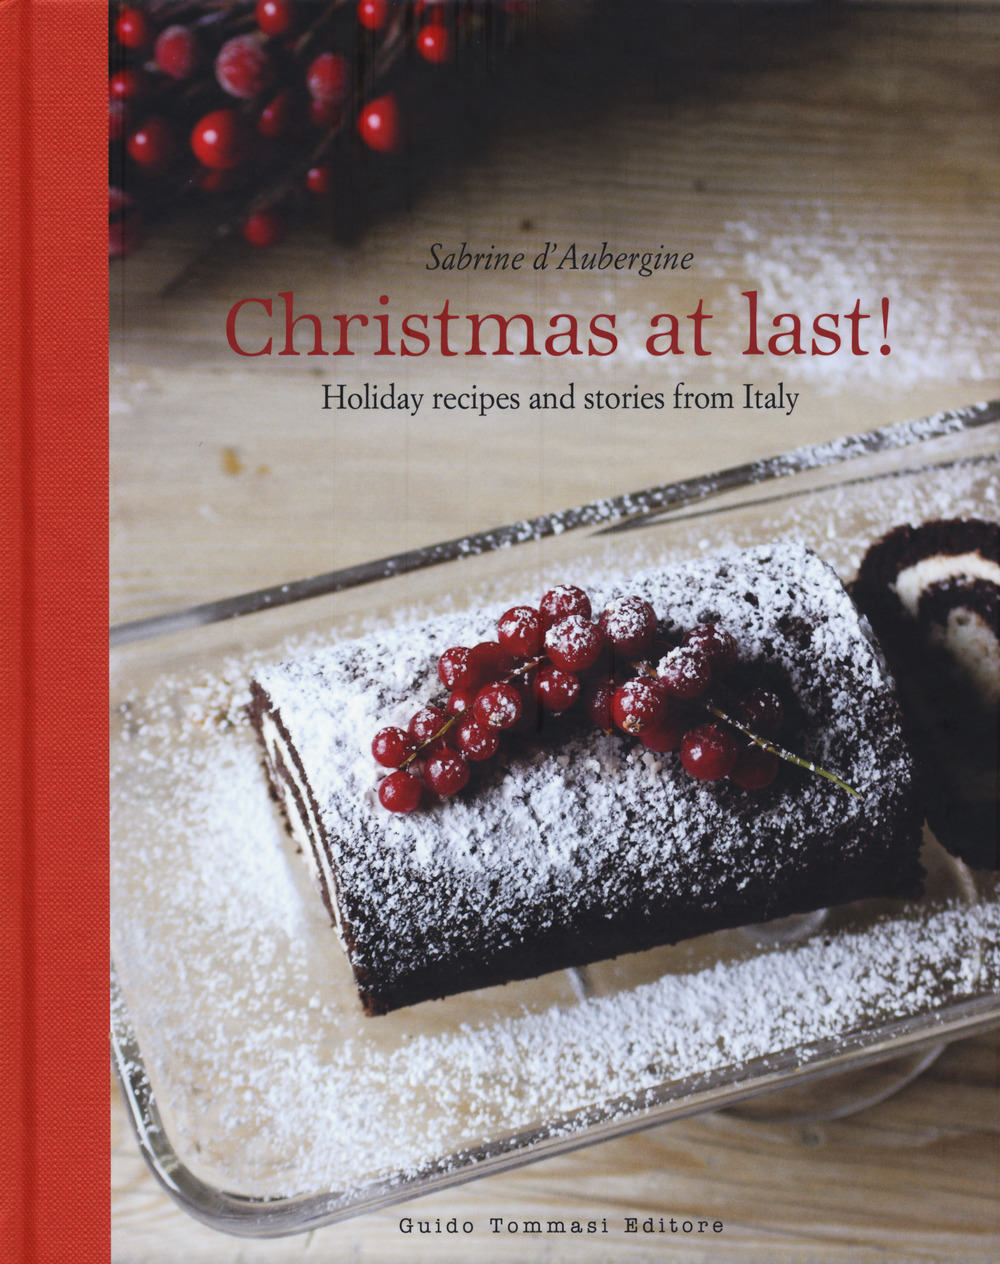 Libri Sabrine D'Aubergine - Christmas At Last! Holiday Recipes And Stories From Italy NUOVO SIGILLATO, EDIZIONE DEL 29/11/2018 SUBITO DISPONIBILE